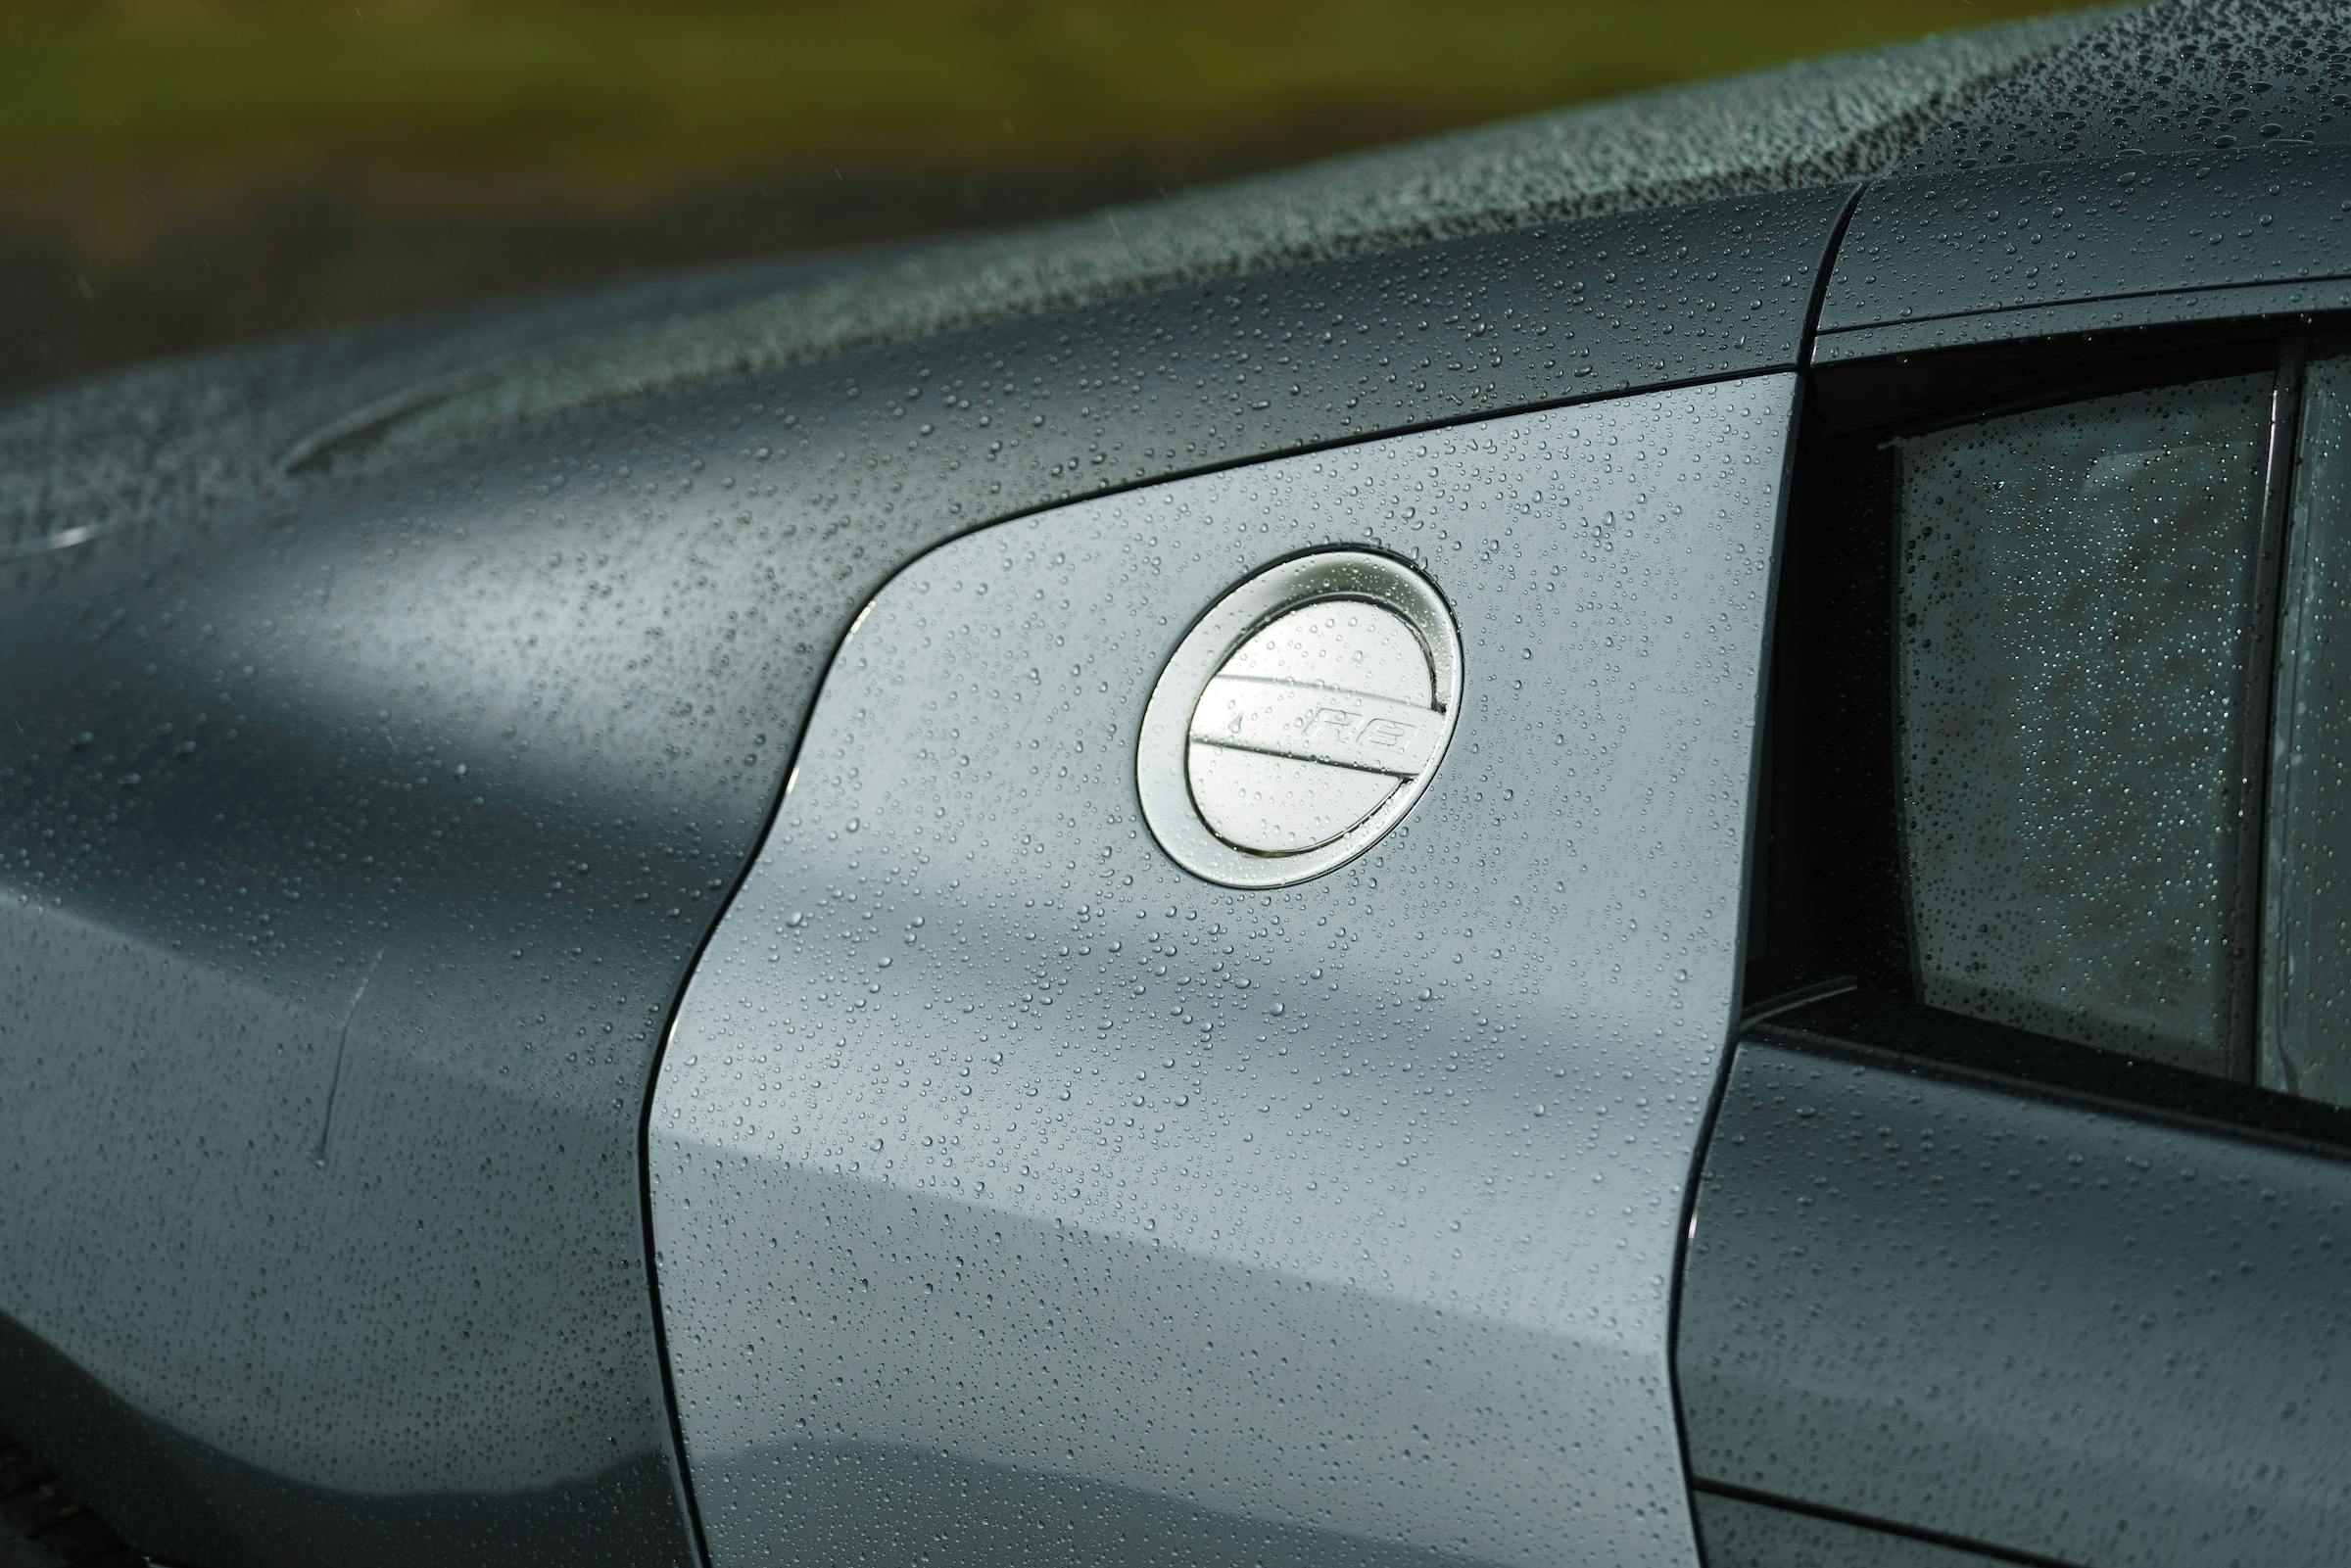 Audi R8 pillar fuel door detail